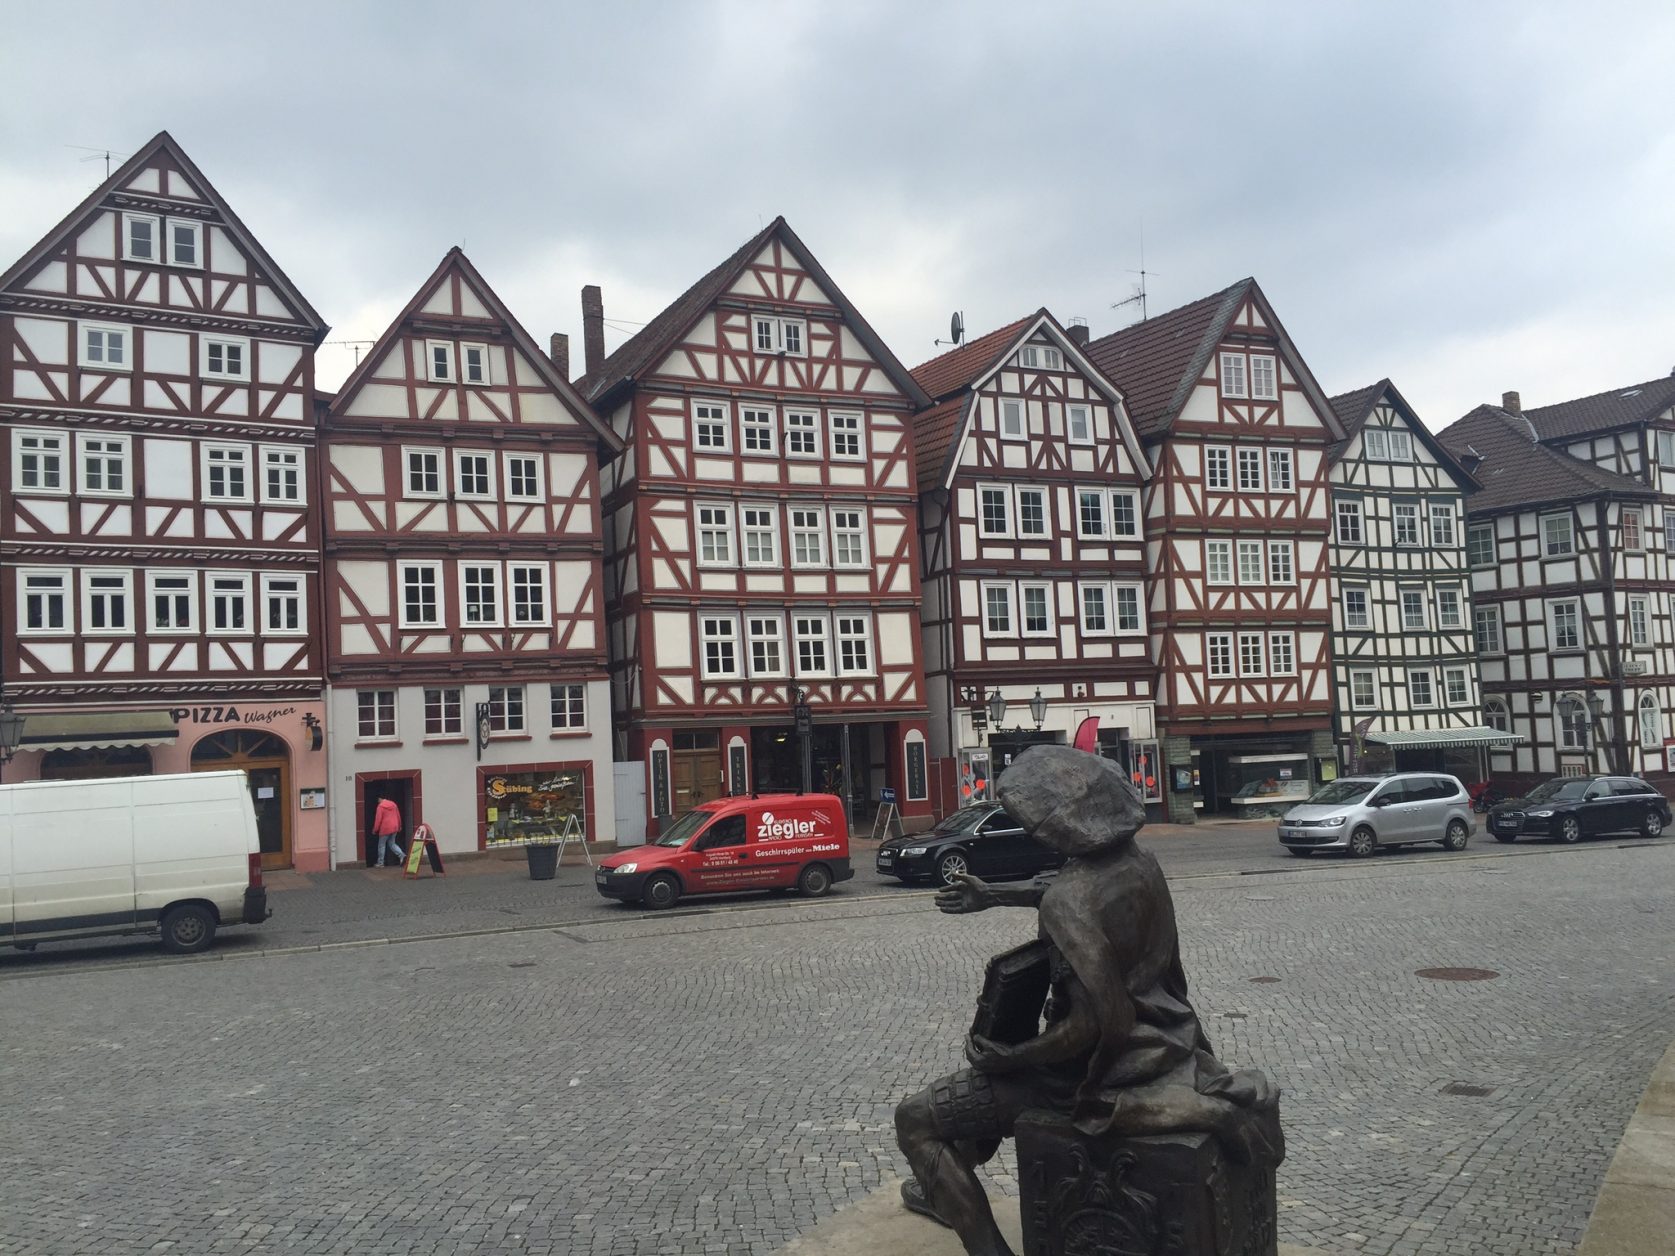 Jahrhundertealte Fachwerkhäuser gruppieren sich um die erste Reformationskirche Hessens auf dem romantischen Marktplatz.Foto: D.Weirauch